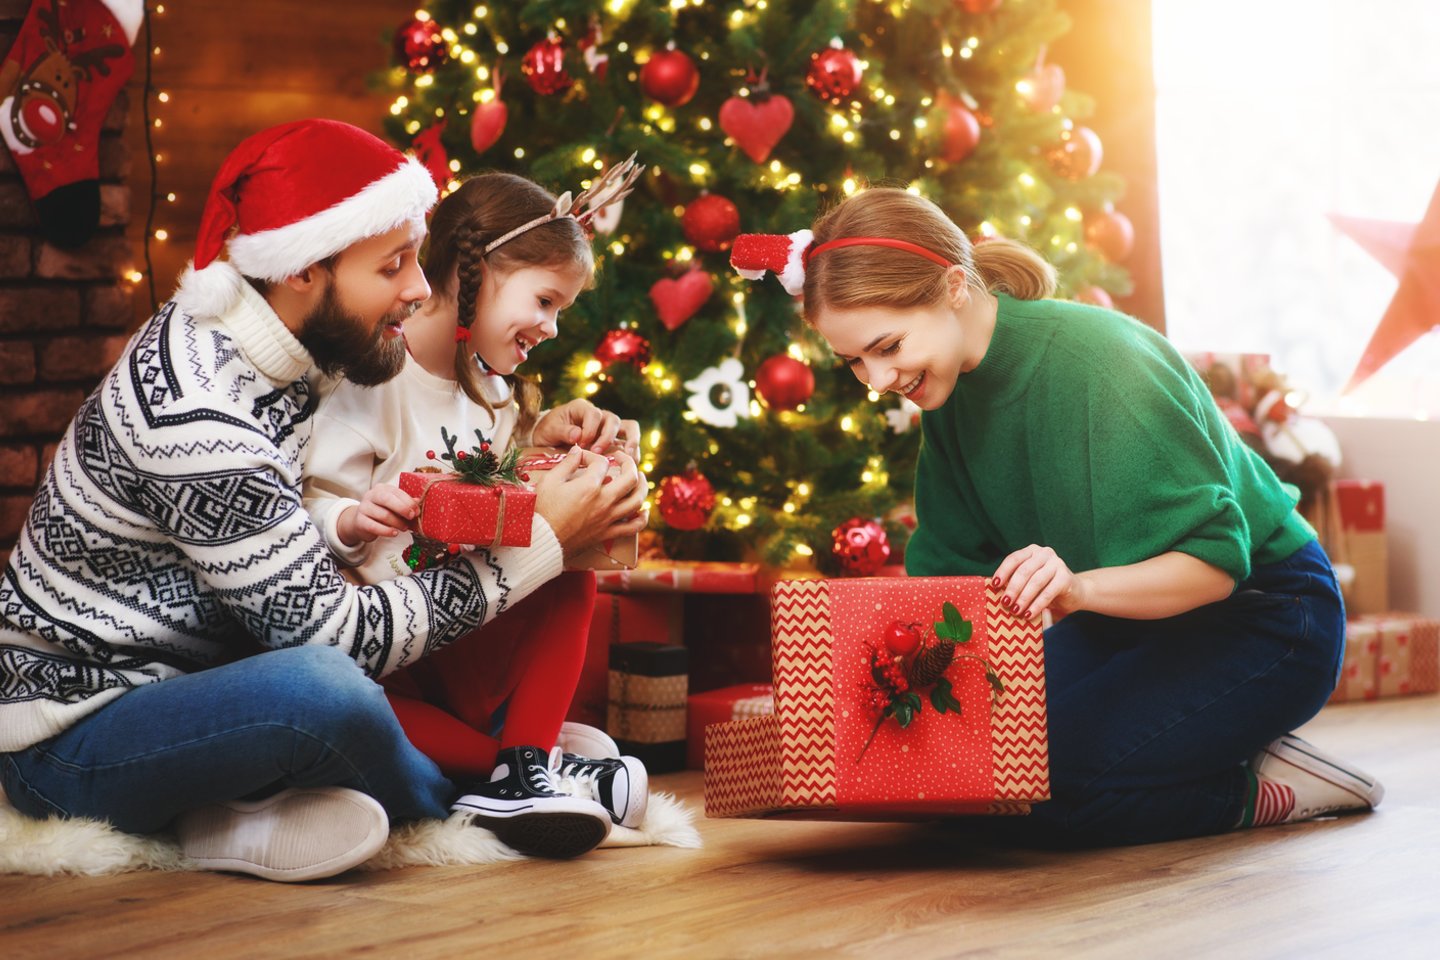 Prieš svarstant kokioms dovanomis ir gėrybėmis nustebinti artimuosius per žiemos šventes, atkreipkite dėmesį į tai, kas svarbiausia.<br>123rf.com asociatyvi nuotr.